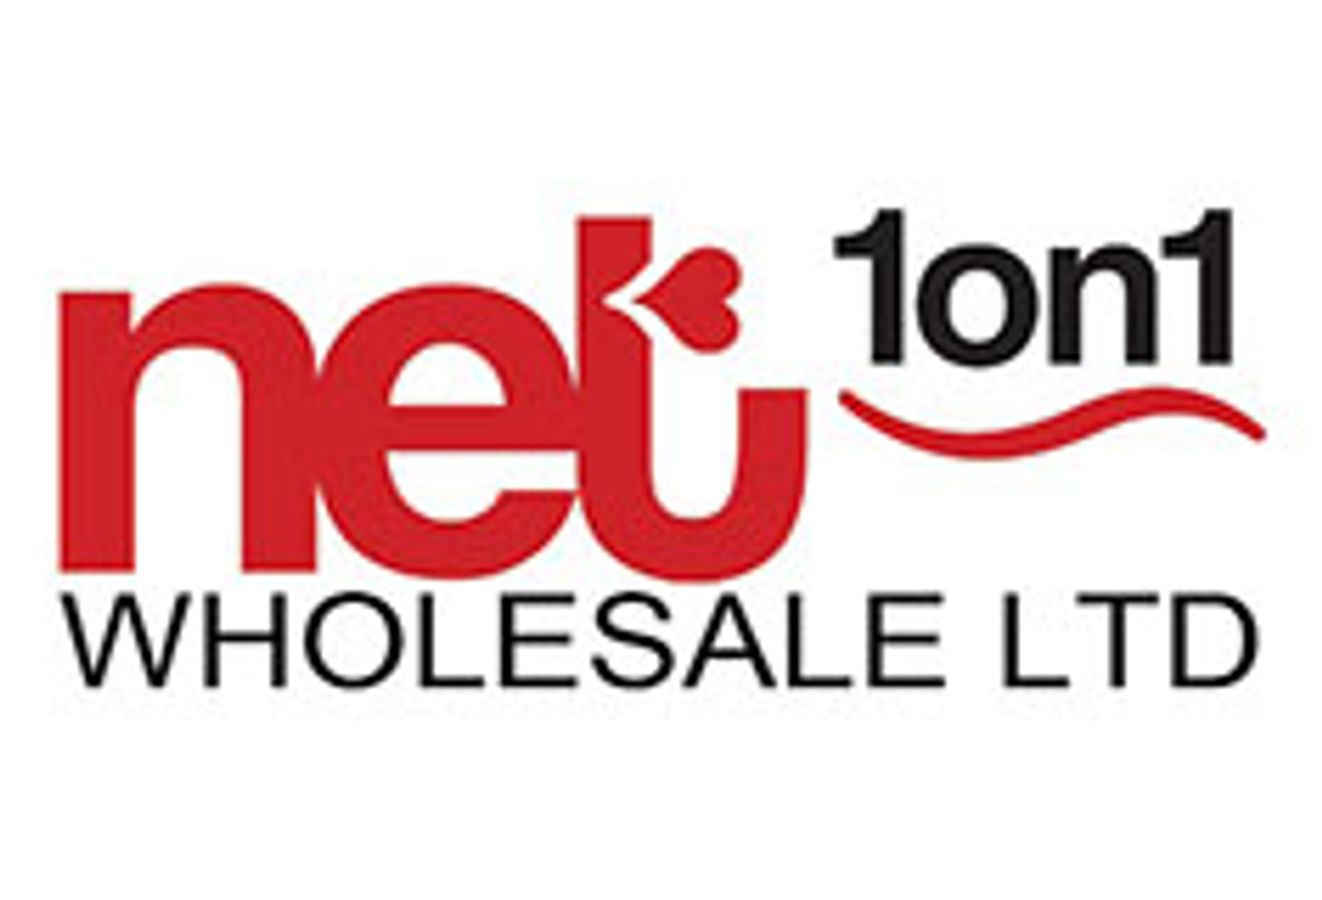 Net 1on1, Ltd.